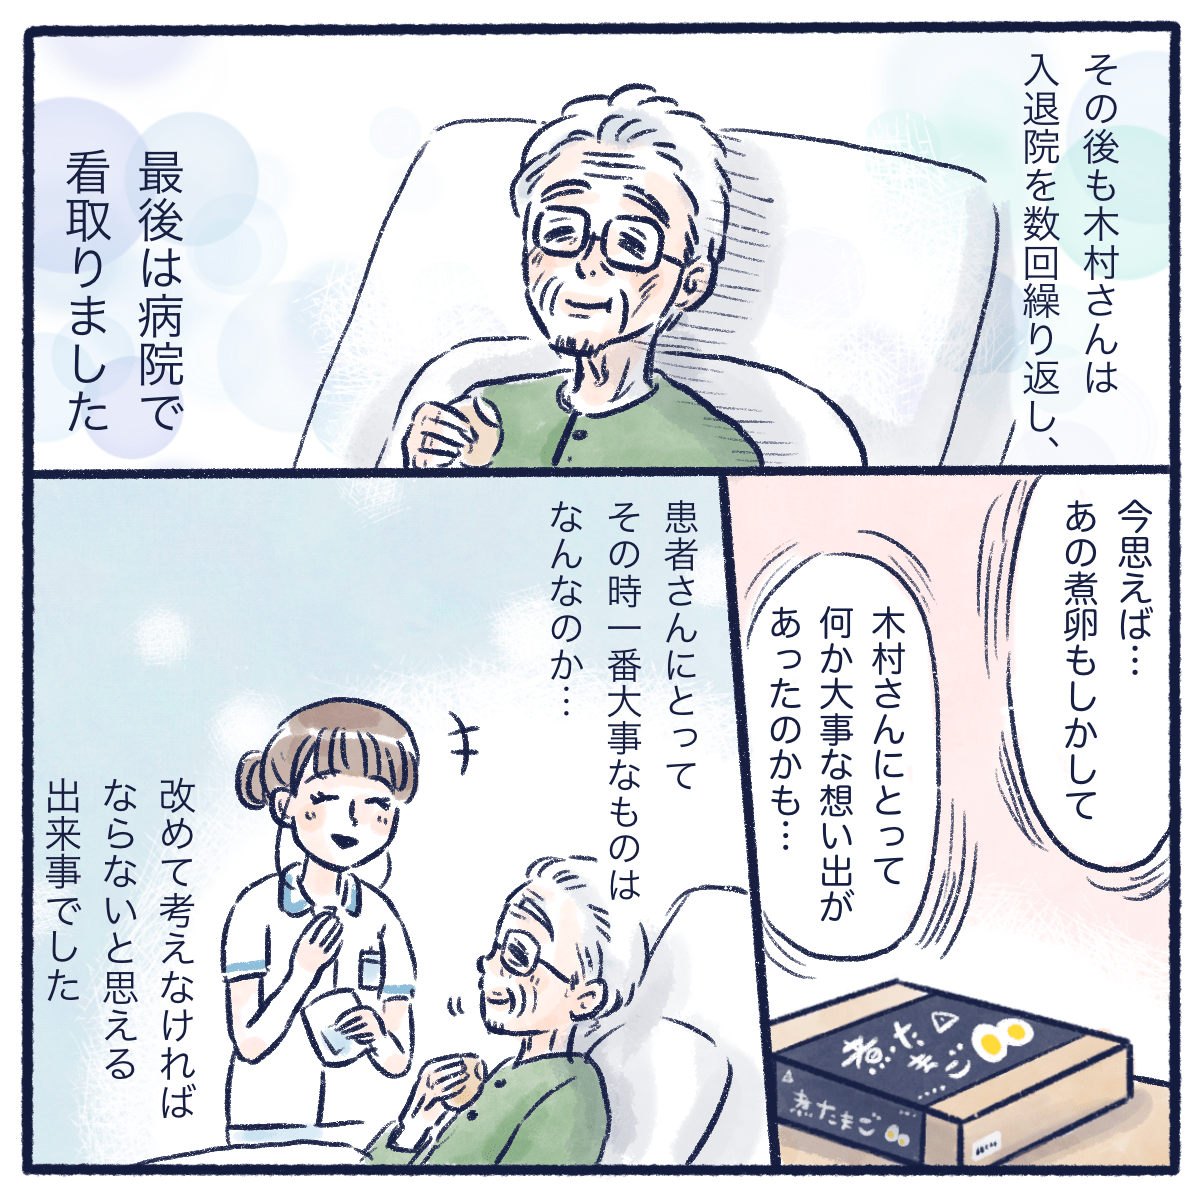 入退院を繰り返した木村さんはその後他界するが患者さんに1番大切なものはなにかをかんがえることの大切さを知る